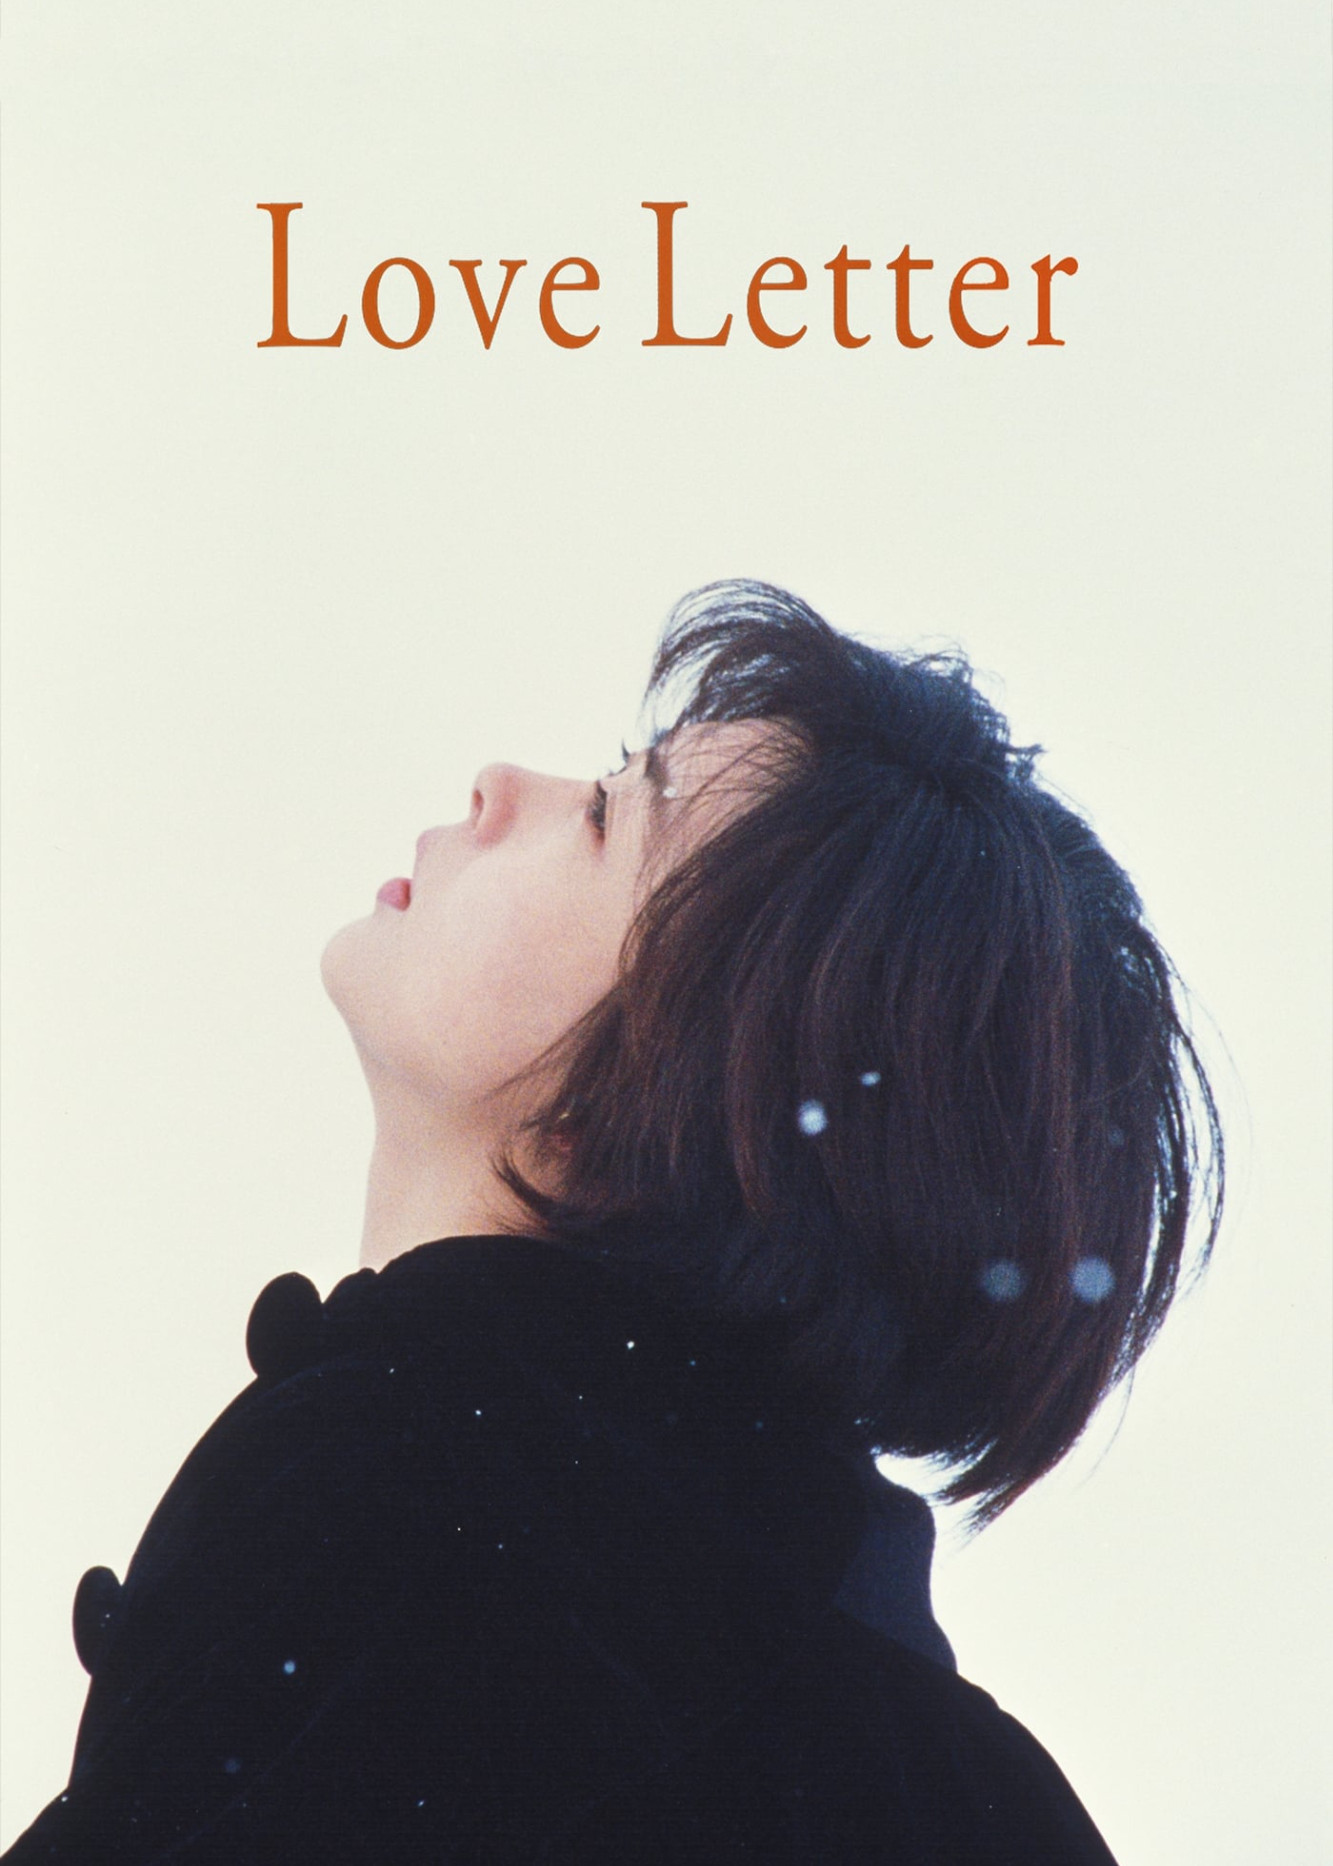 Love Letter (Love Letter) [2015]